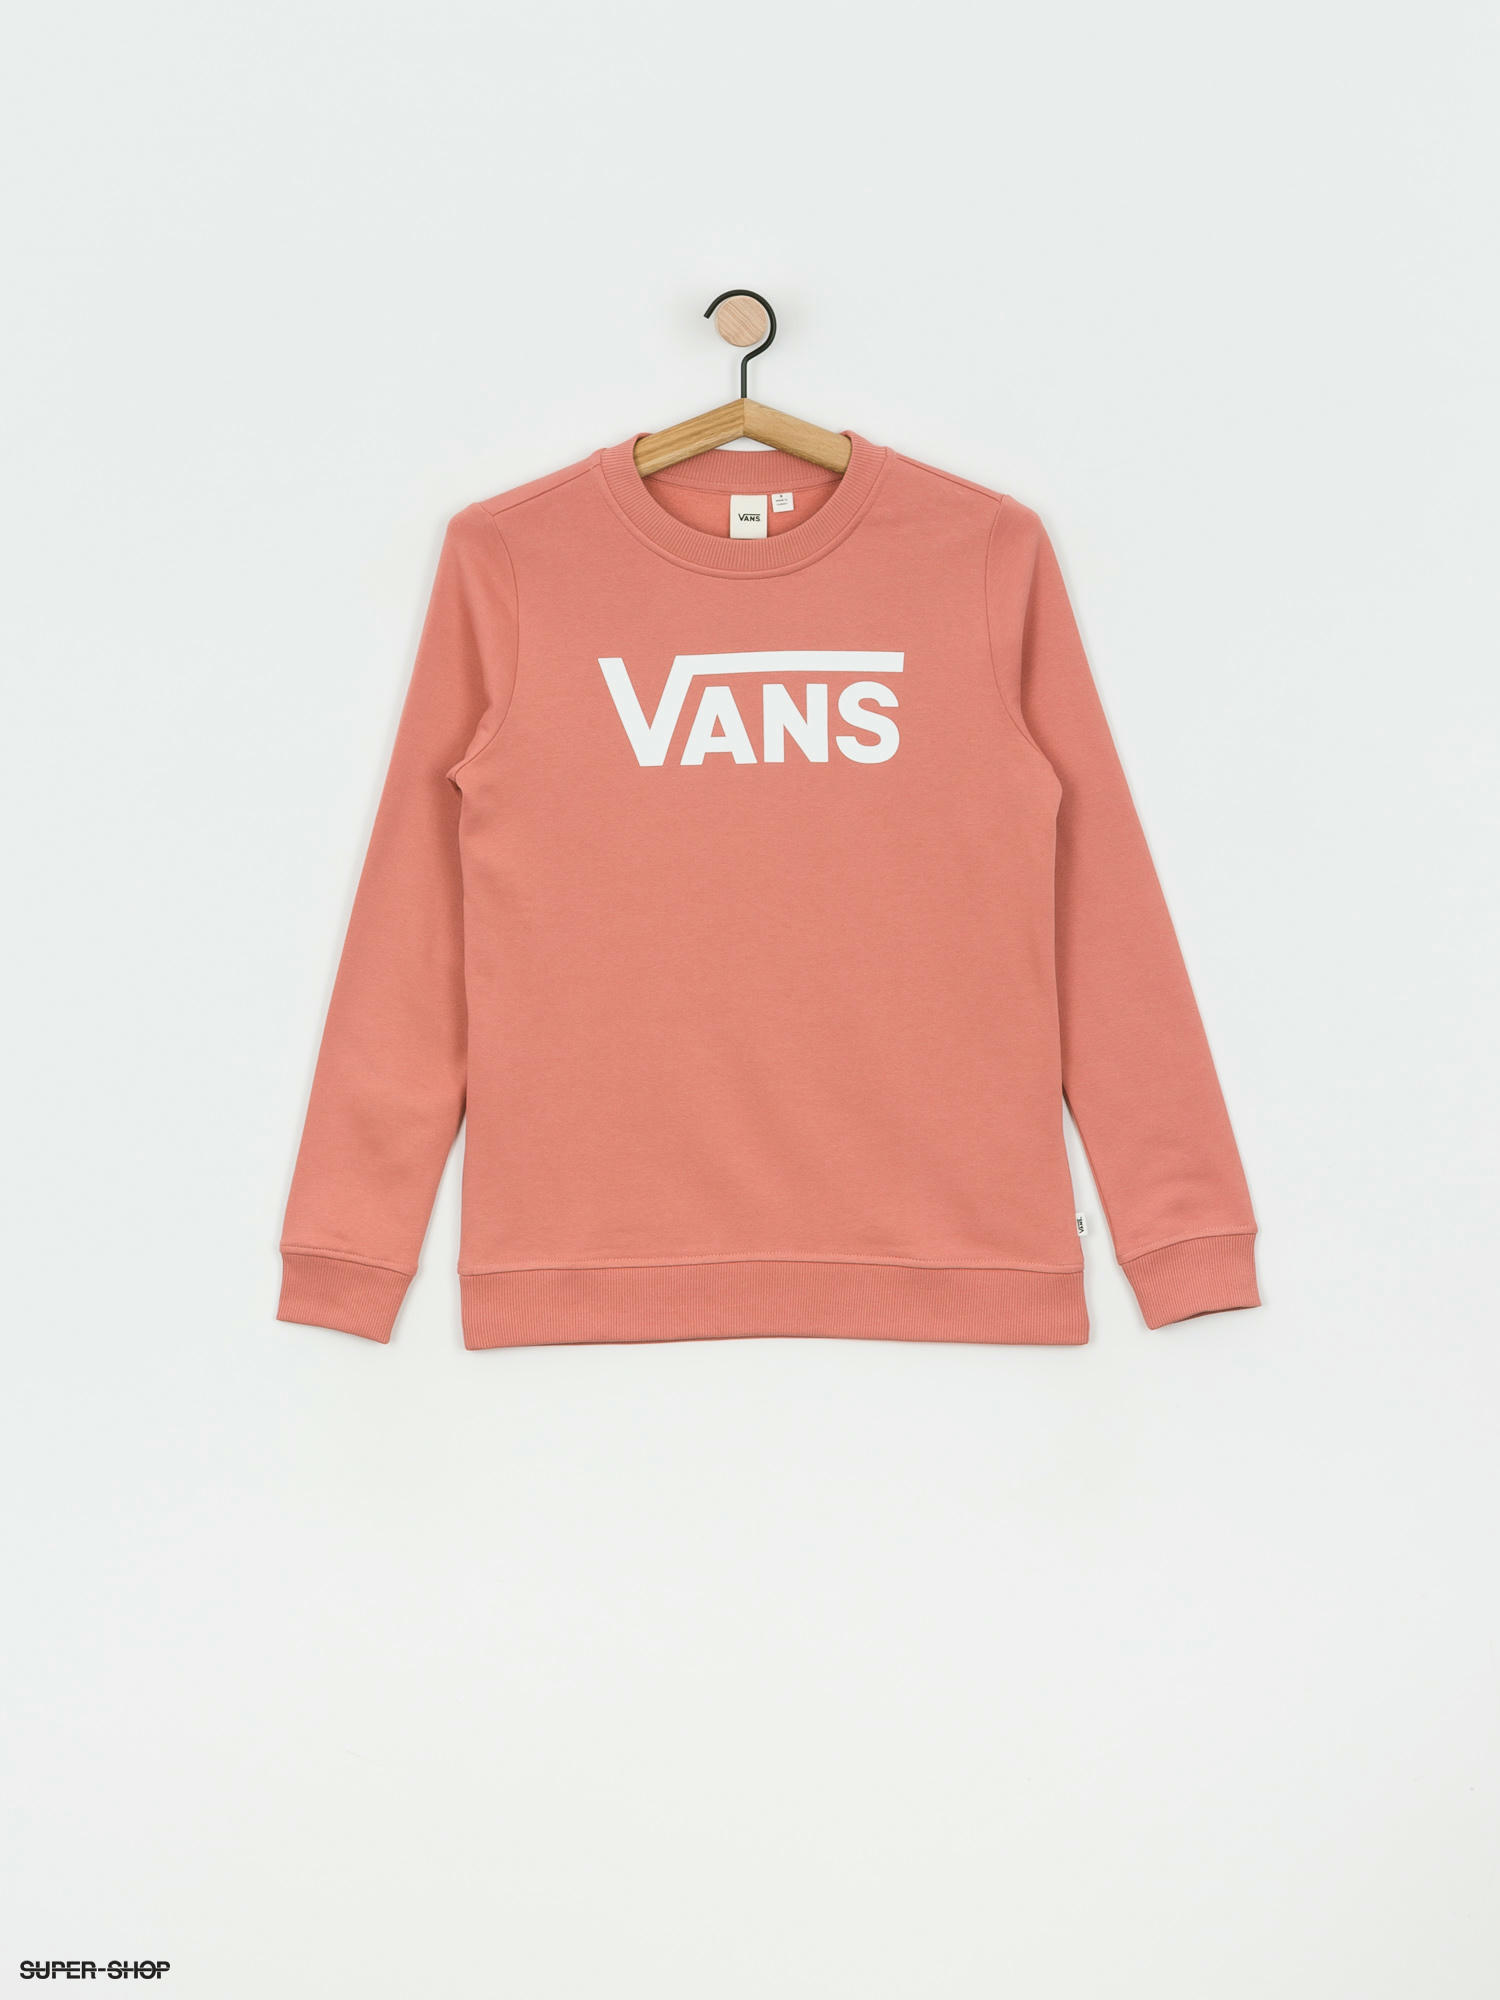 pink vans sweater